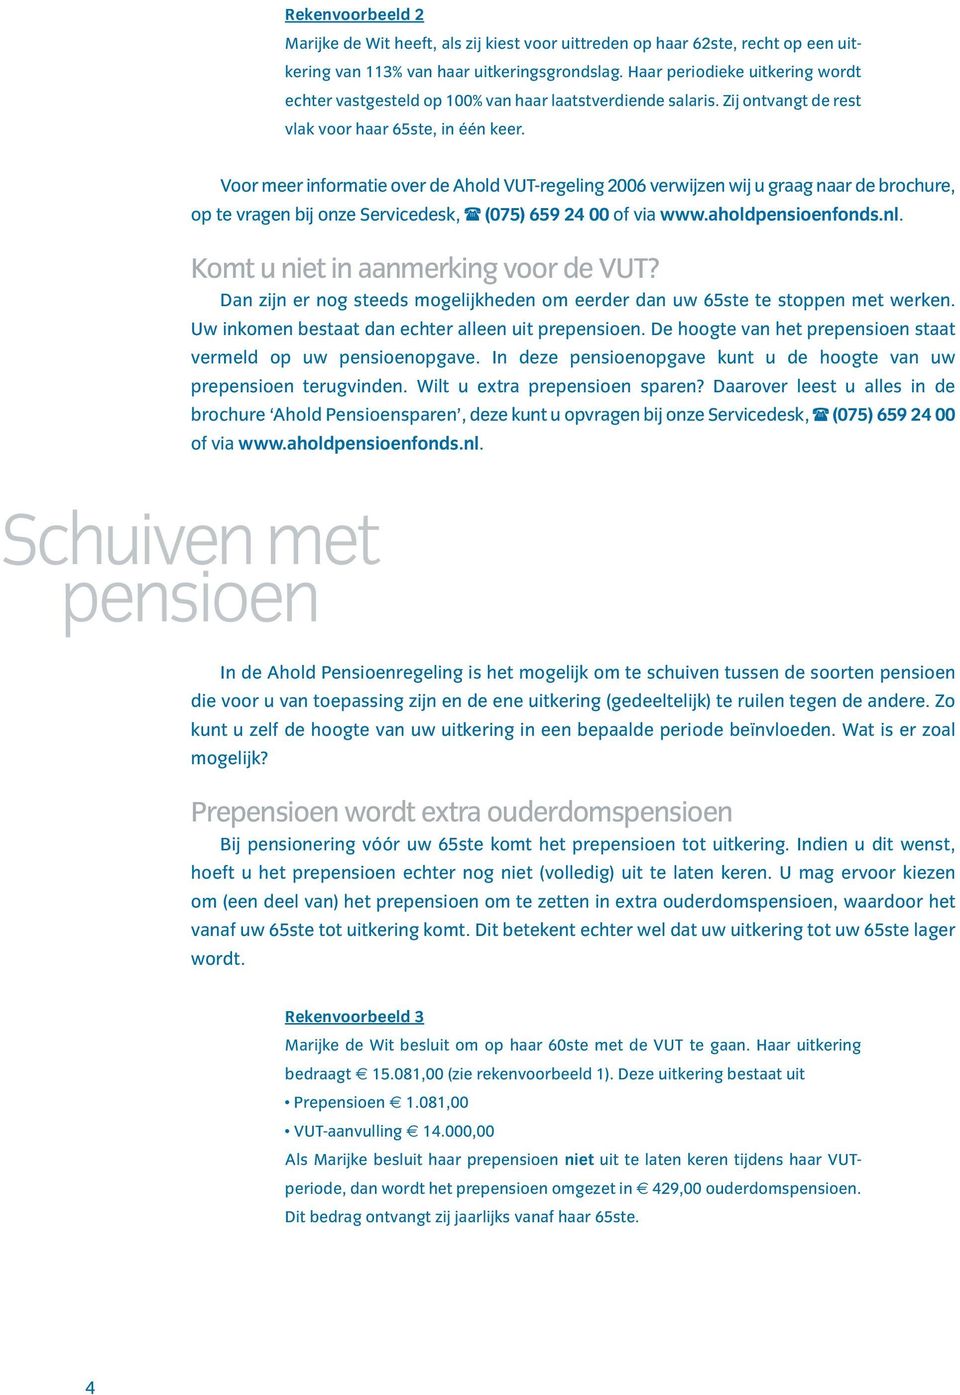 Voor meer informatie over de Ahold VUT-regeling 2006 verwijzen wij u graag naar de brochure, op te vragen bij onze Servicedesk, (075) 659 24 00 of via www.aholdpensioenfonds.nl.